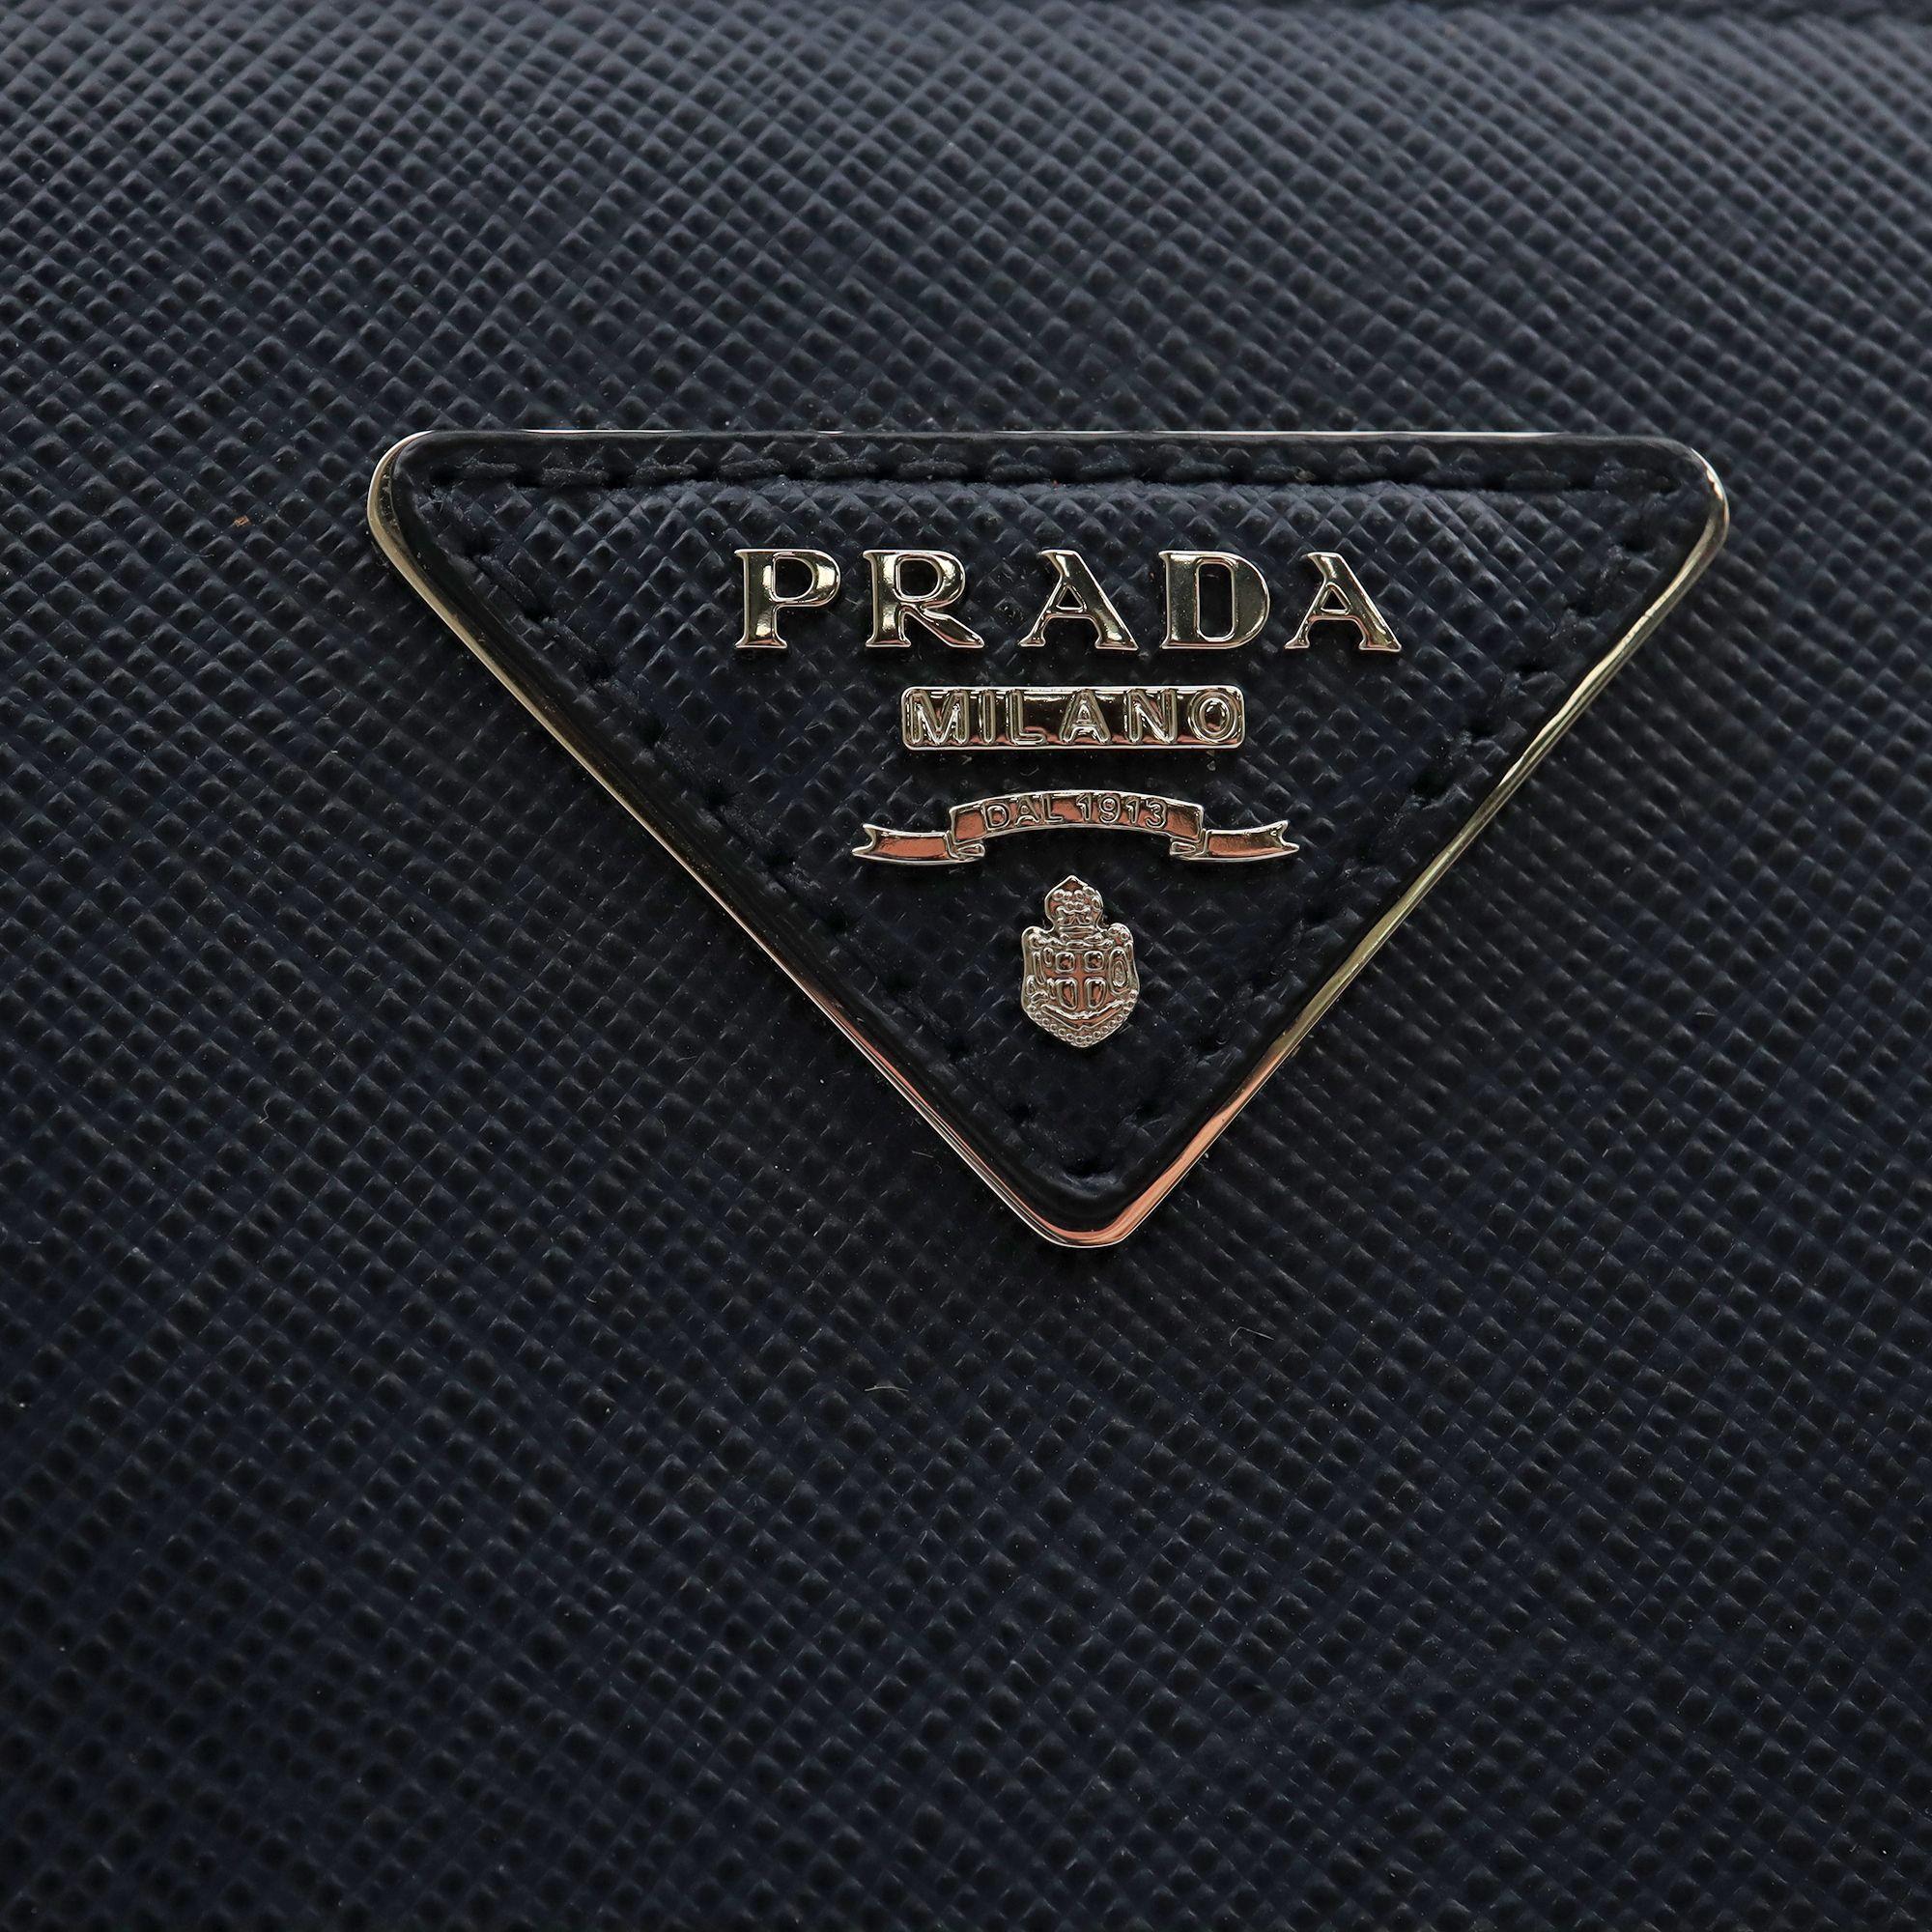 Women's Prada Galleria Saffiano Lux Baltico Leather Silver Hardware Medium Tote Bag 